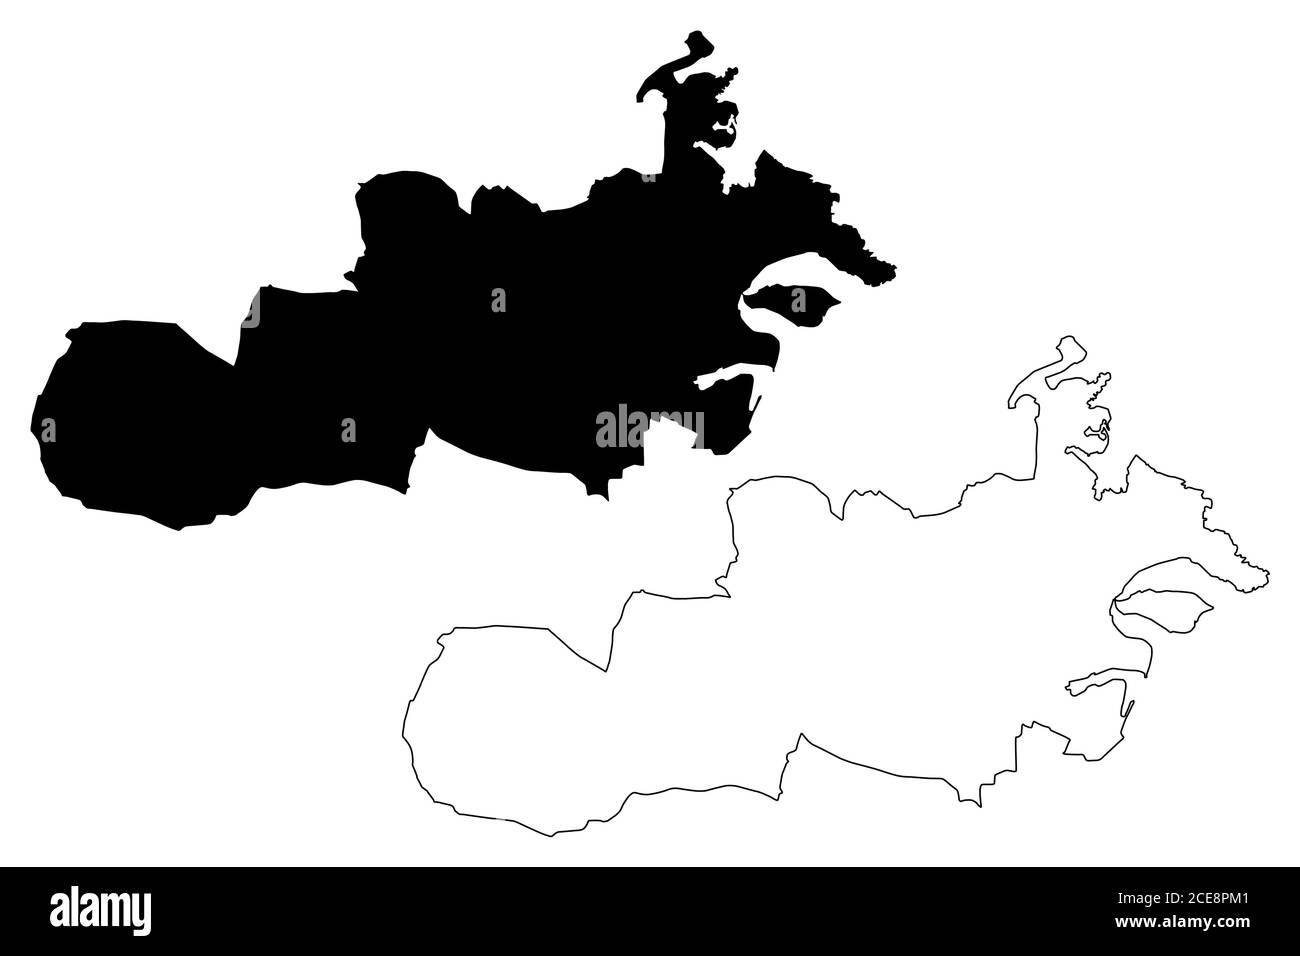 Central Region (Republic of Malta, island, archipelago, Regions of Malta) map vector illustration, scribble sketch Regjun Centrali map Stock Vector